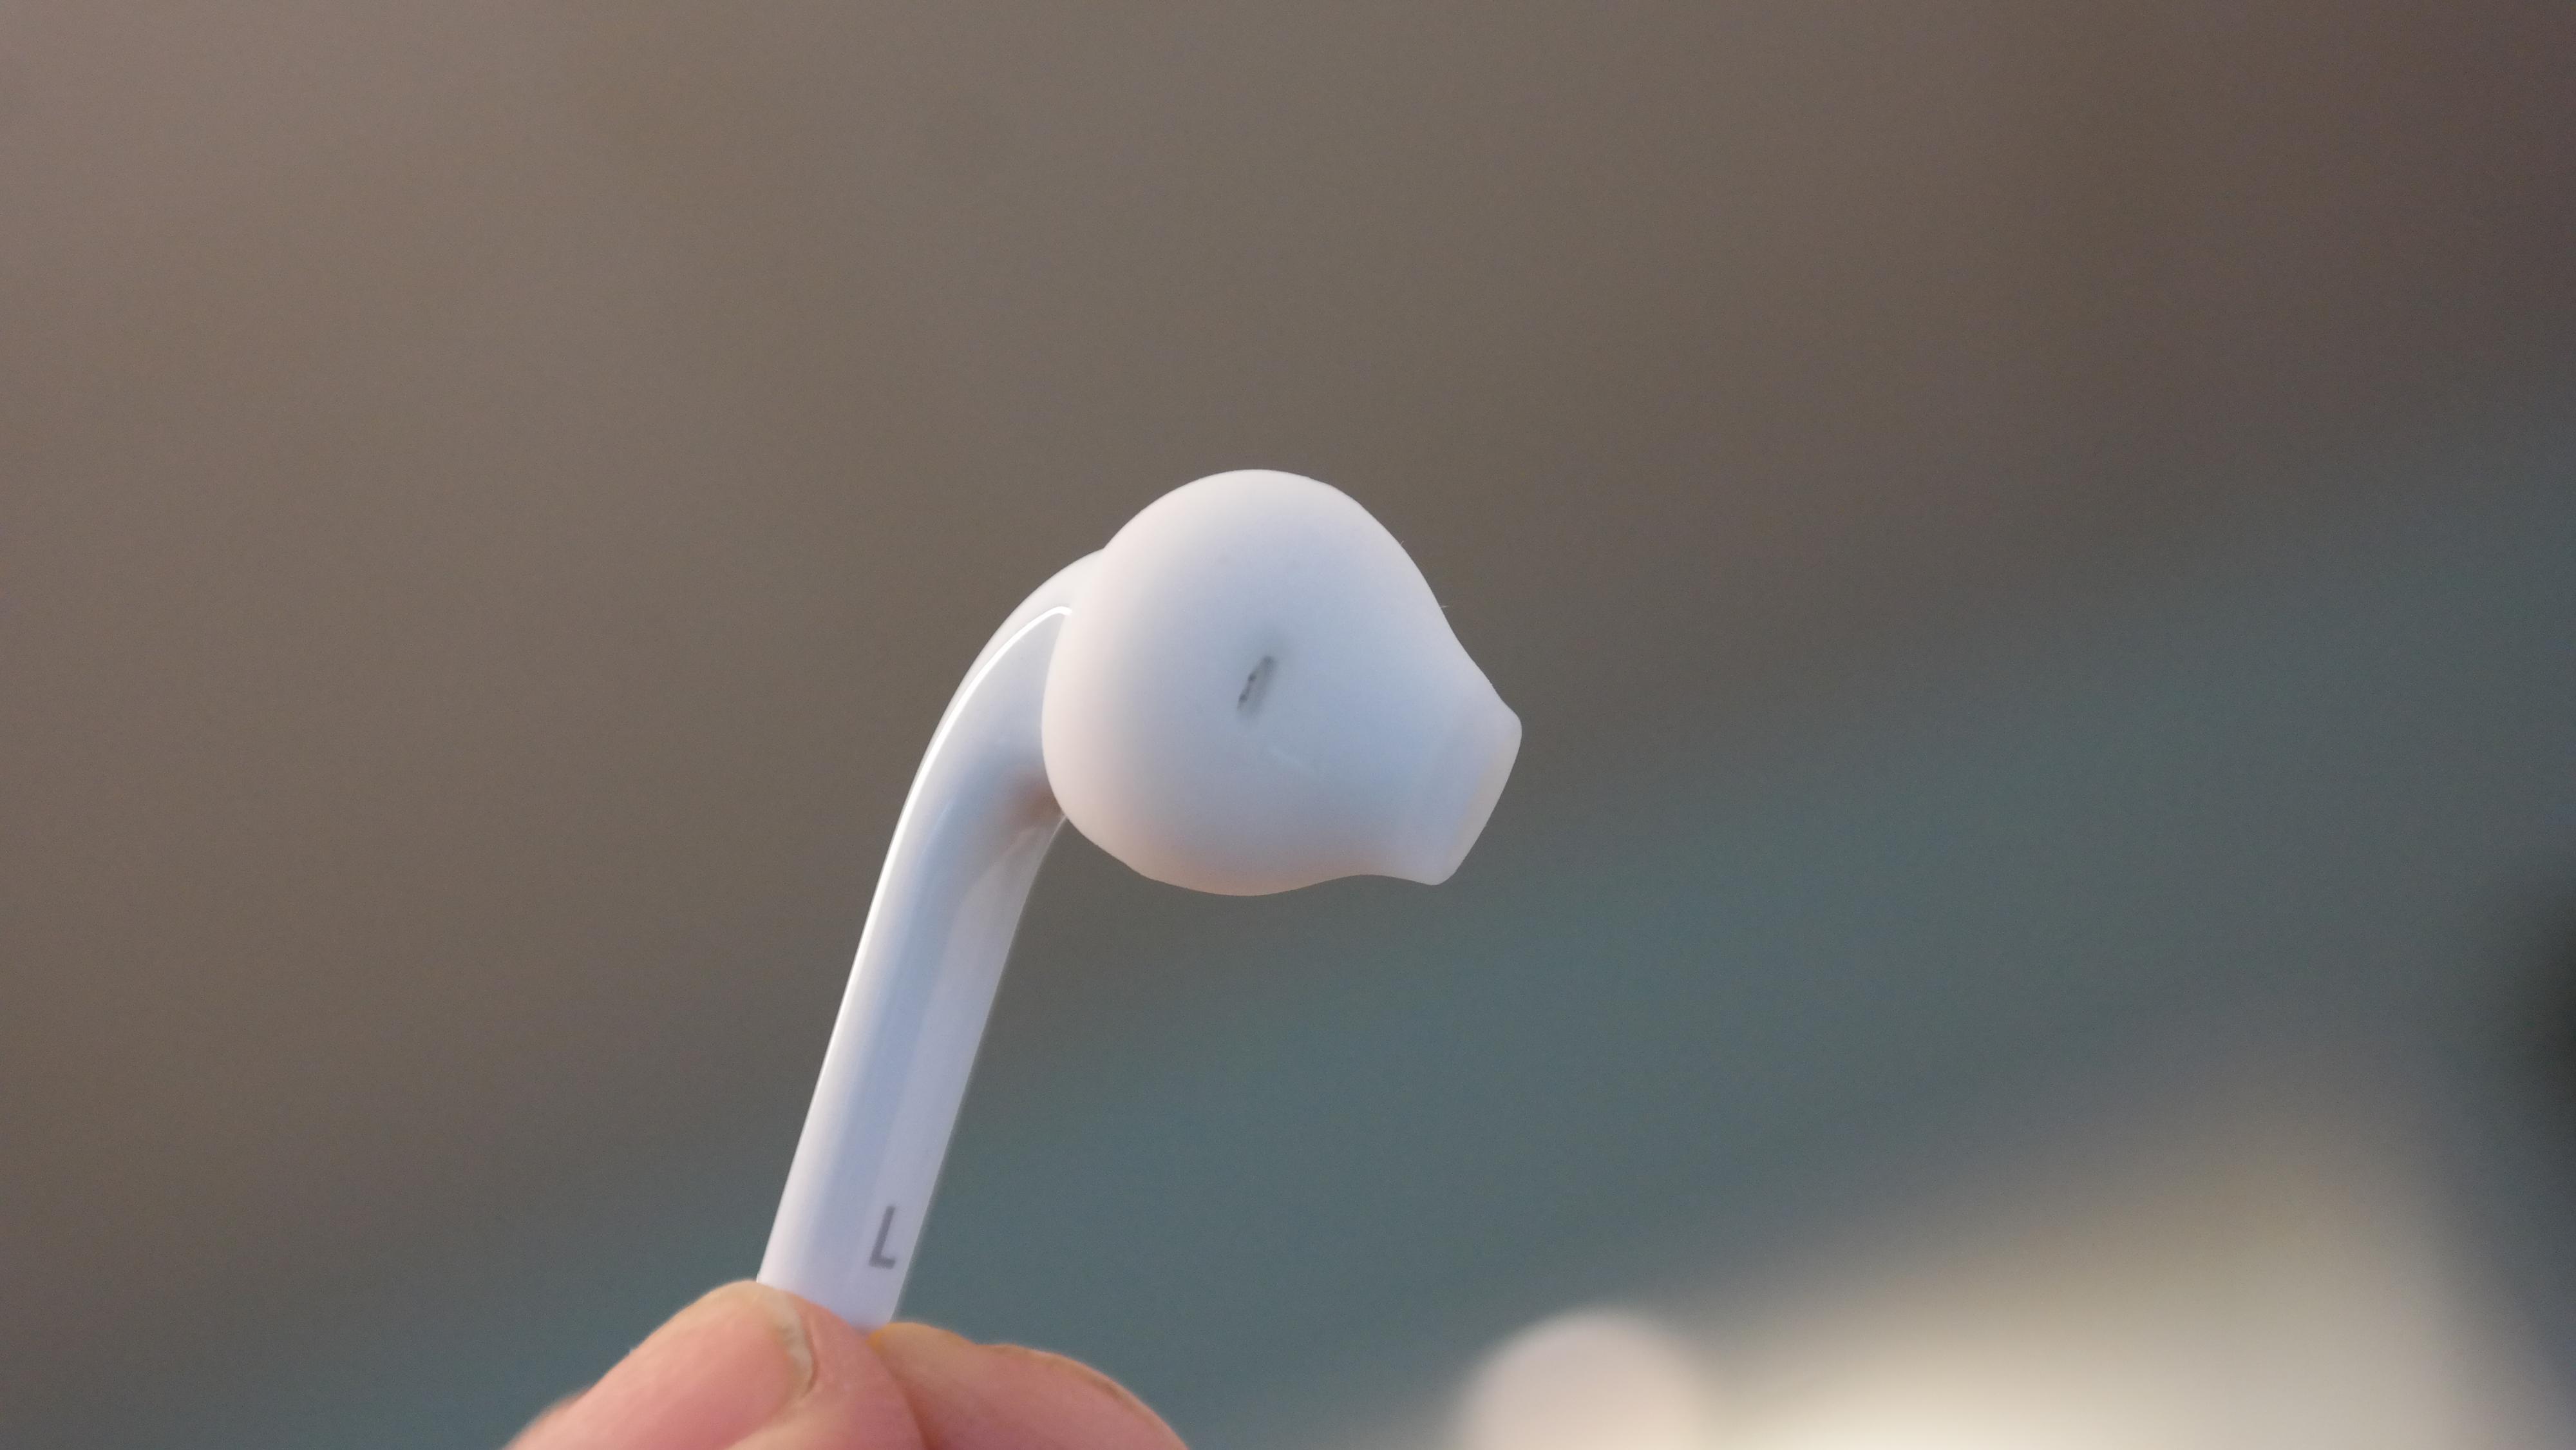 Ørepluggene er blitt bedre, men du kan fremdeles ha mye å hente på å bruke øreklokker eller skikkelige ørepropper. Foto: Espen Irwing Swang, Tek.no